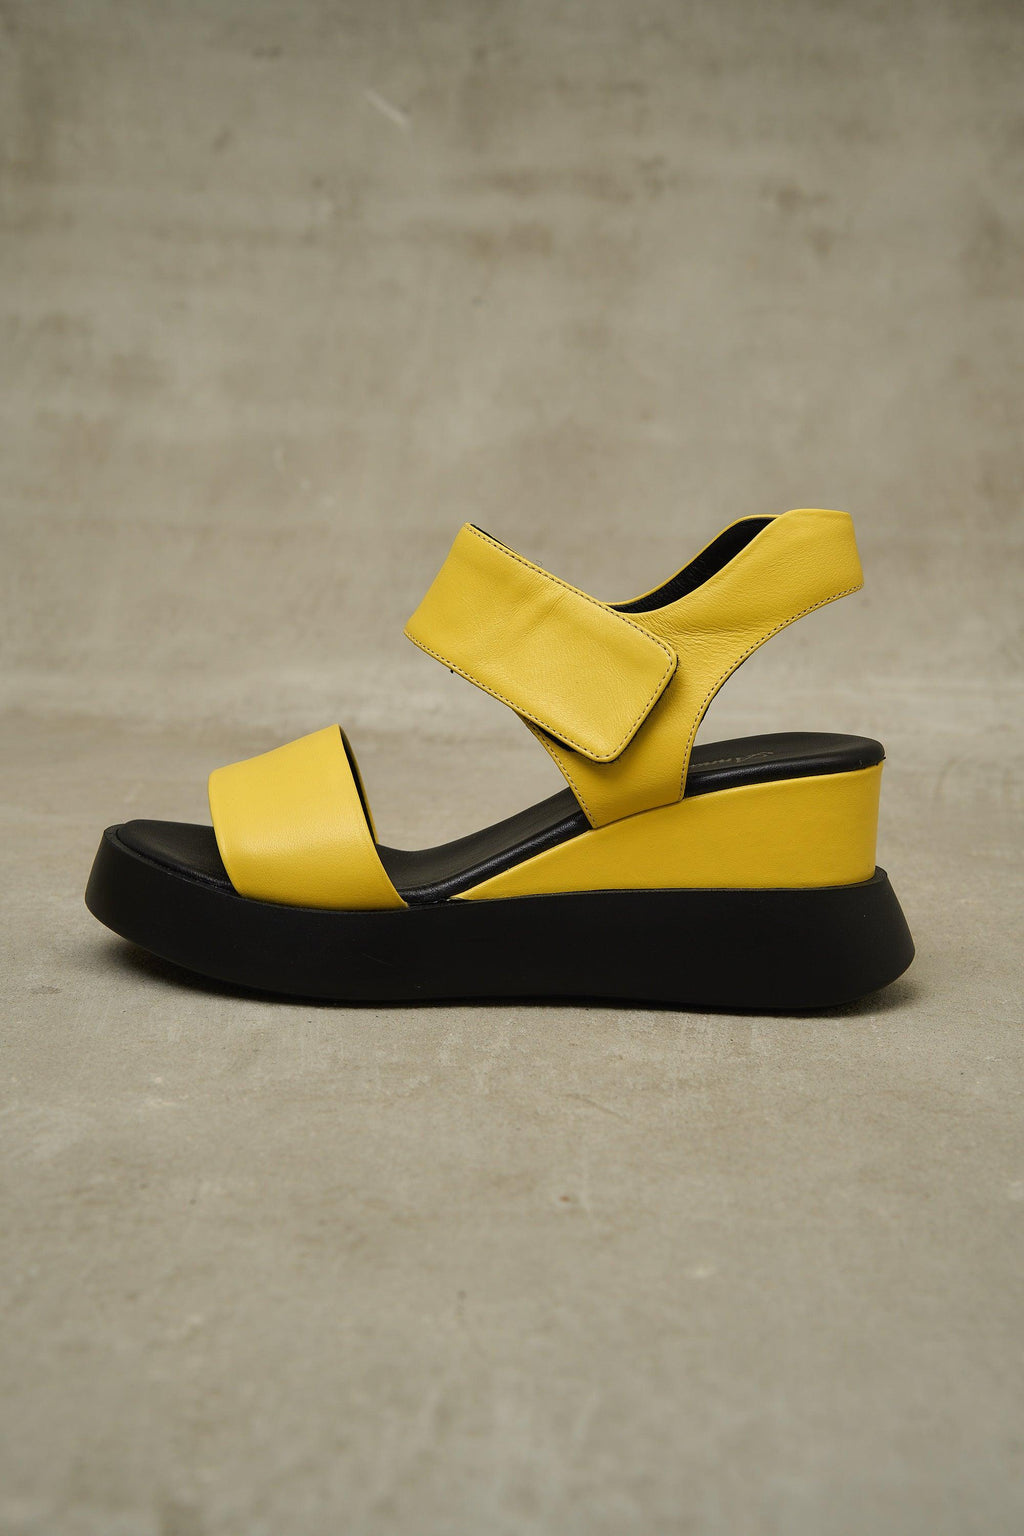 Cample Platforms – Lonza Shoes